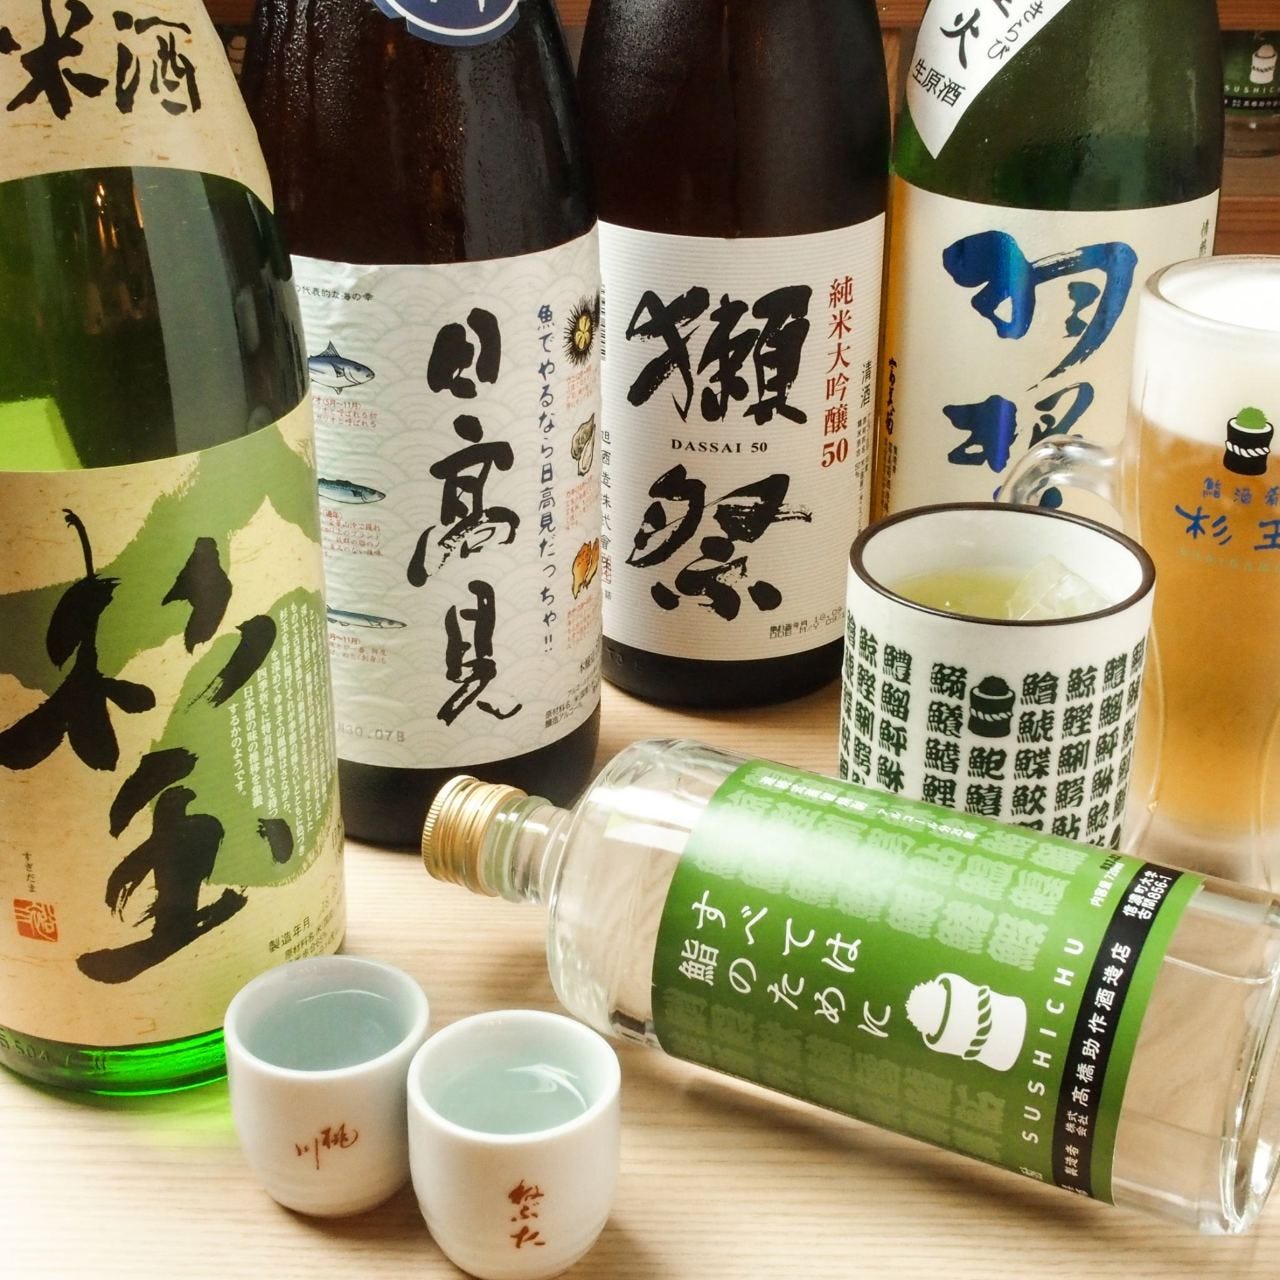 鮨・酒・肴 杉玉 布施駅